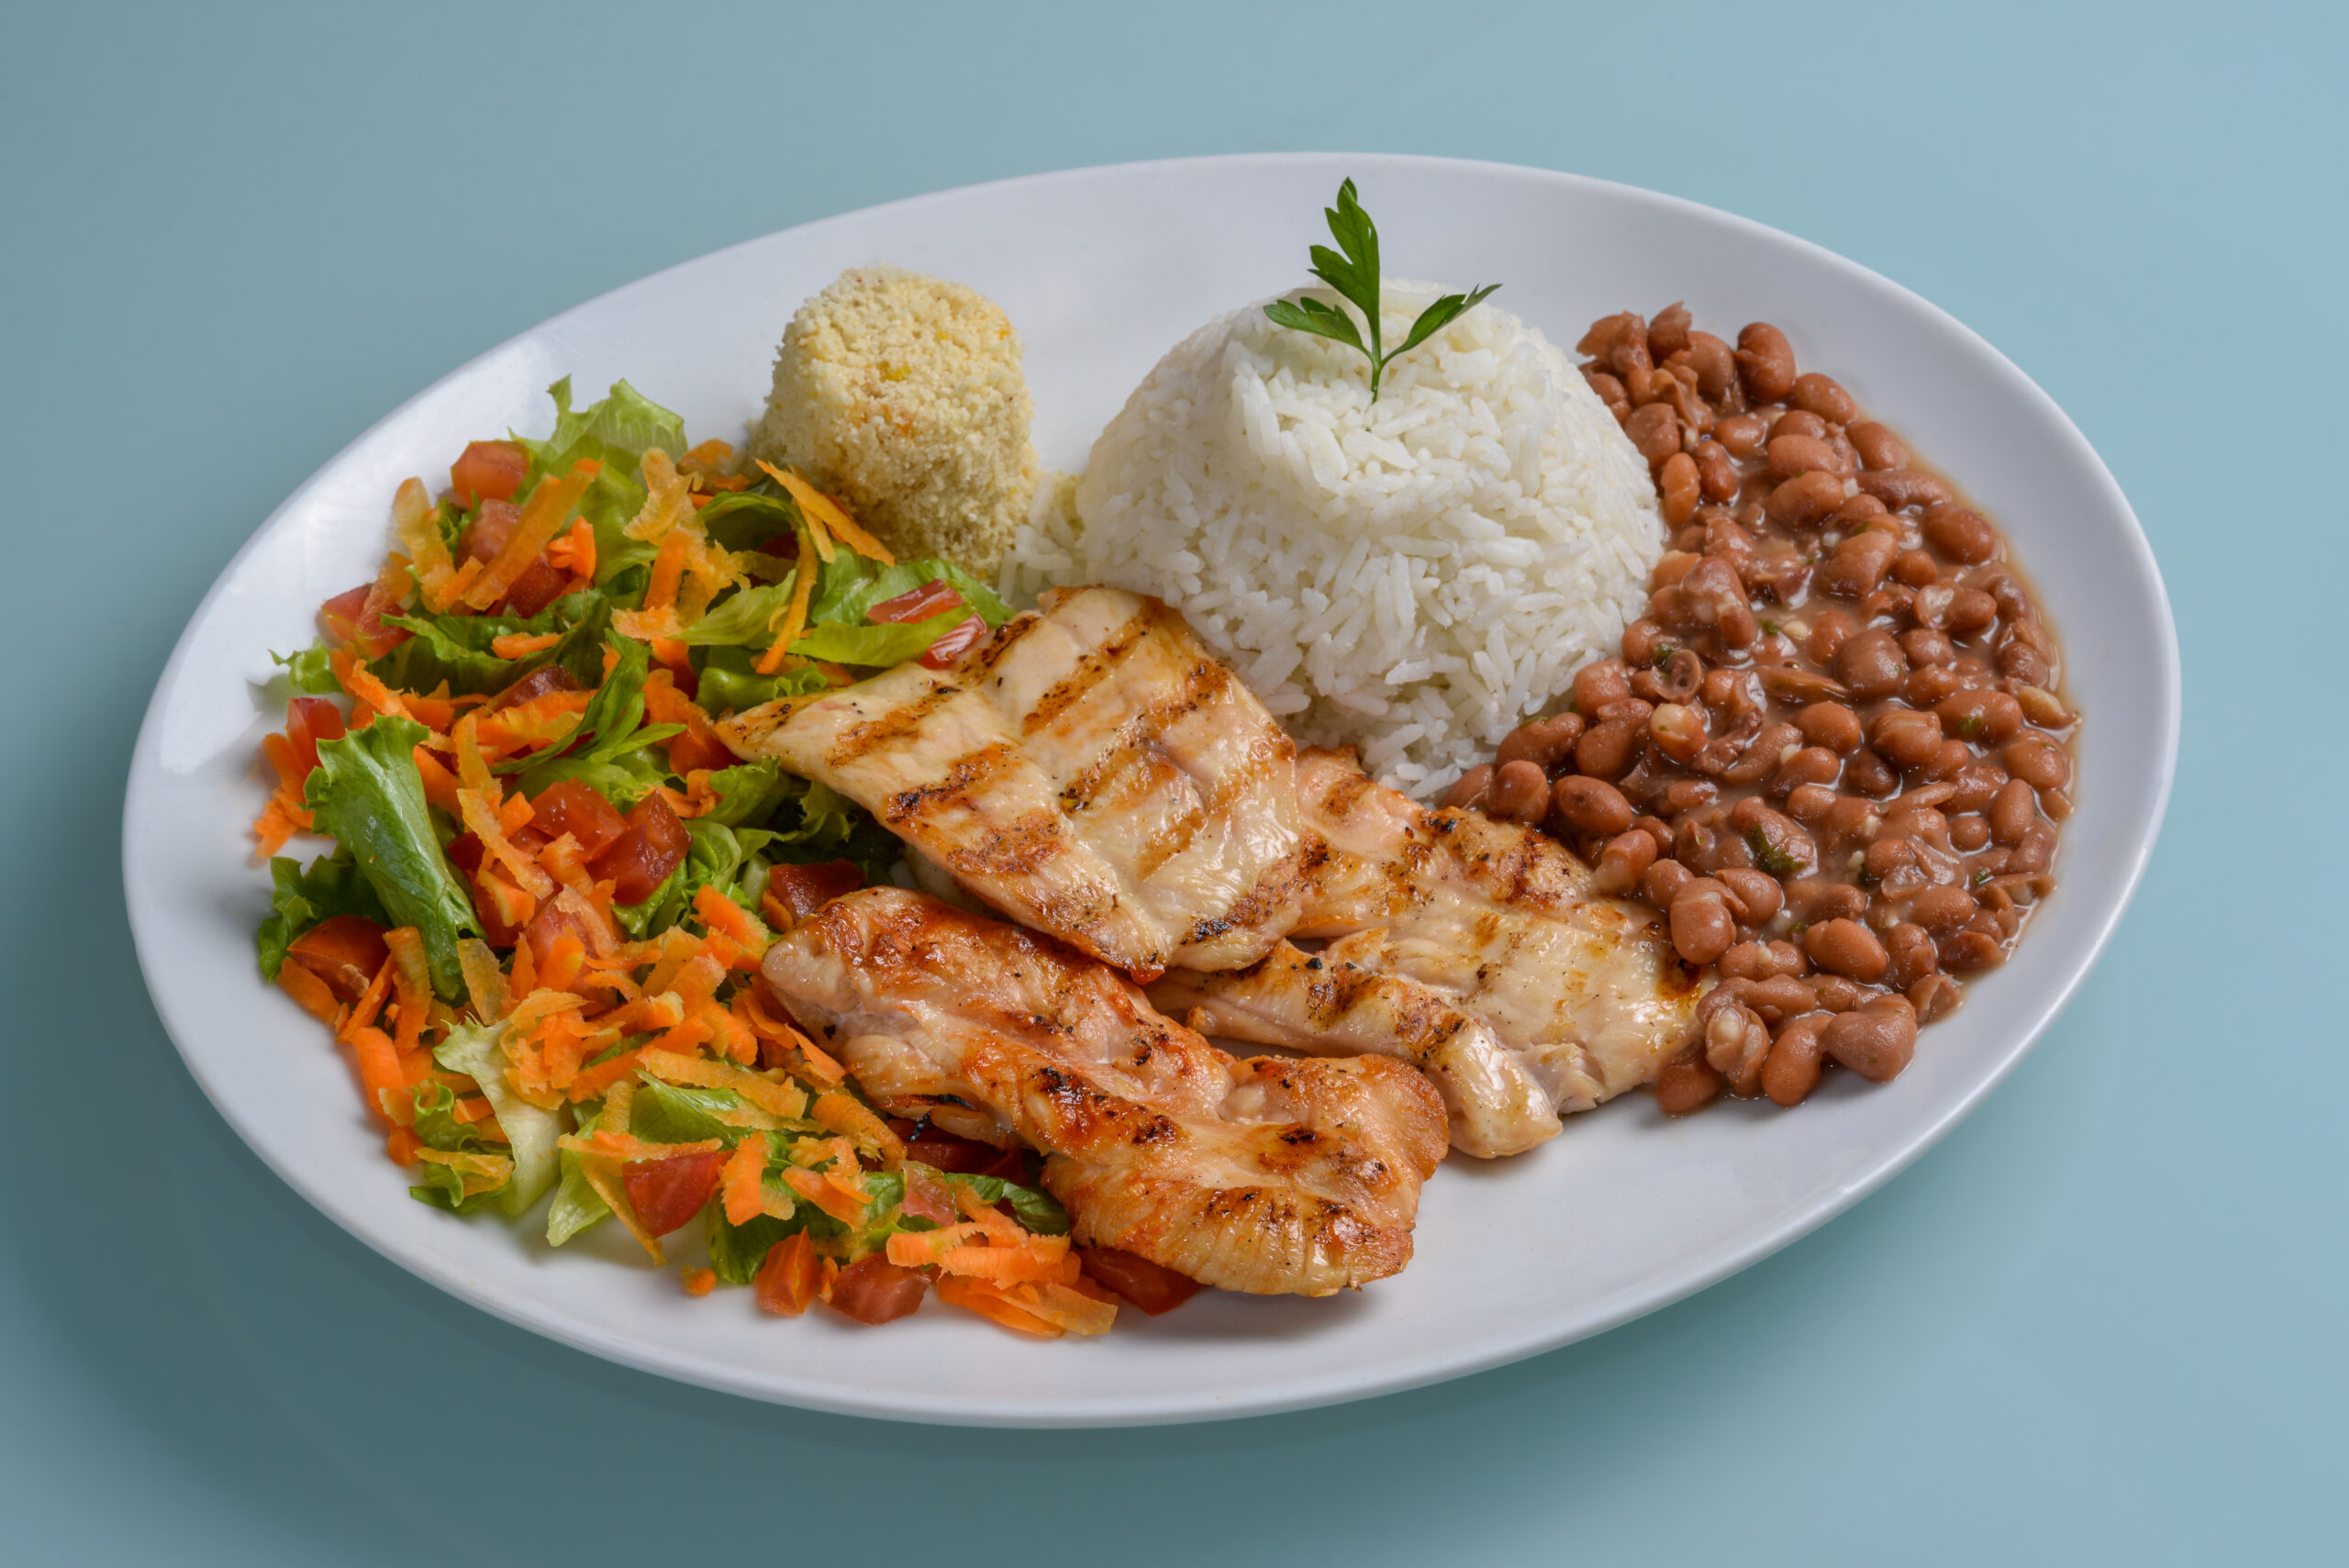 Dieta brasileira tradicional pode ser um modelo de referência